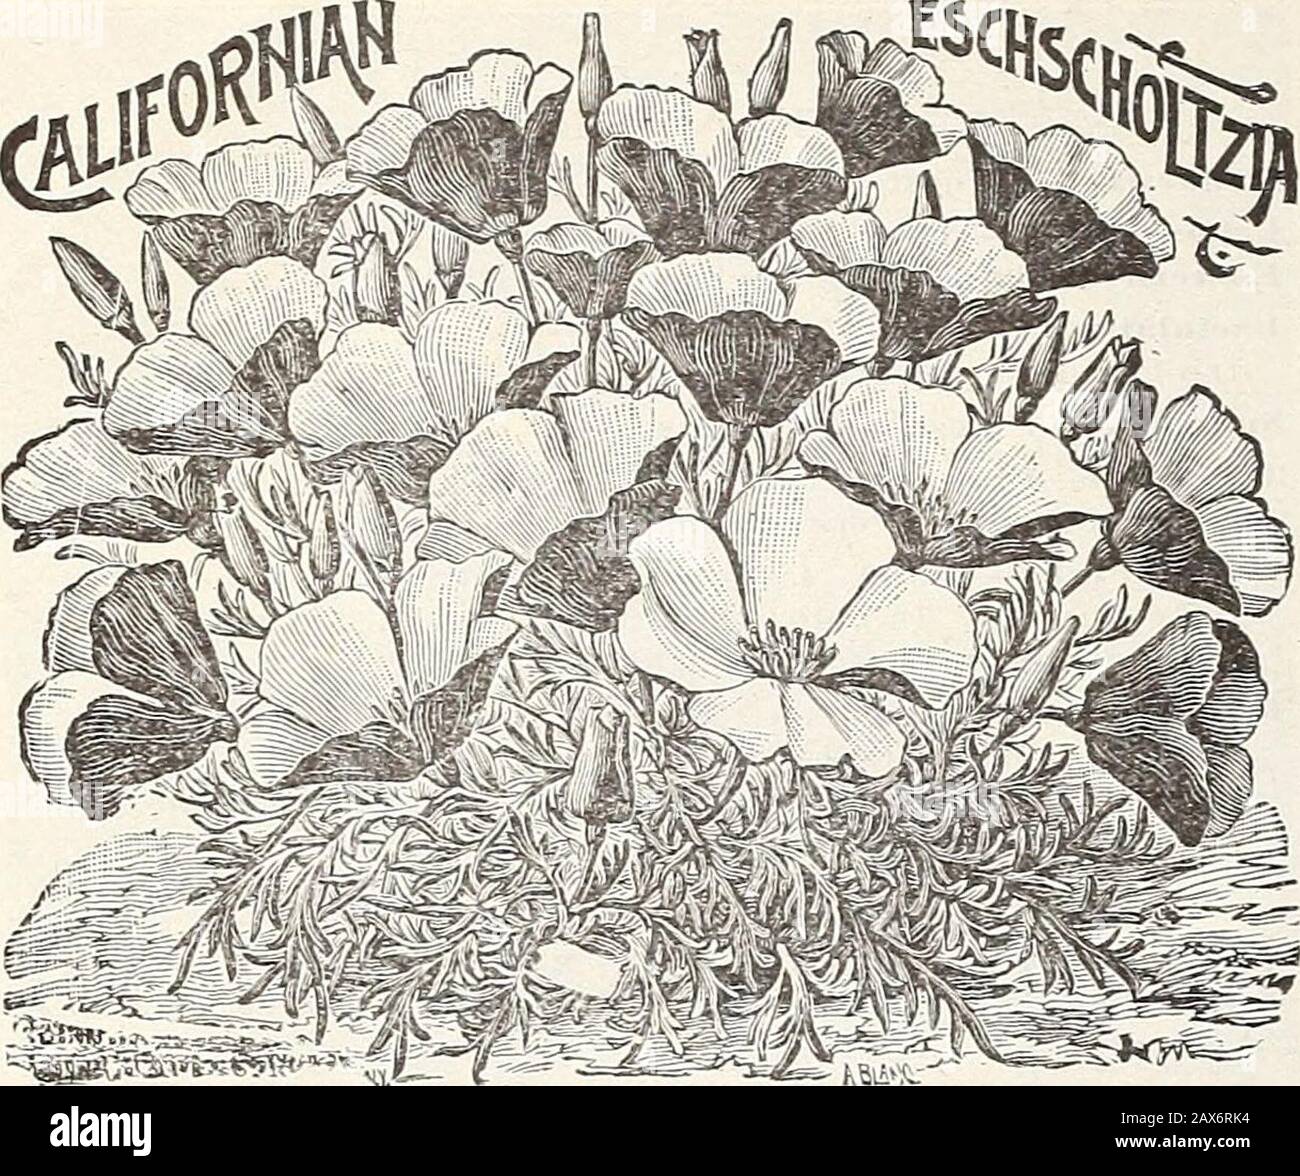 Currie's Farm und Garten jährlich: Frühjahr 1915 . ZWERG KIUTKT DUIULIS PIXK. 72 CURRLE BROTHERS COMPANY, MILWAUKEE, WIS. 10 10 10 -k&ML-ESCHSCHOI/TZIA-California Poppy. Exzedingly schöne Freiblütige Pflanzen. Säen Sie Während Des Transplantierens Von Saatgut während Des Transplantationen Im Laufe und im Juni, wo es geblüht werden soll, da sie nicht sSand transplantieren. Pkt. Carmine King-Carmin stieg innen und außen Zierlich Queen-Blass rosa schattige Creme, tiefer zu den Rändern hin Bush Escholtzia (Hunnemannia)-Wächst etwa 2 feethigh, mit großen leuchtend gelben tulpenförmigen Blumen, deren Kronblätter wie zerdrückte Satin 5. Gekrinkt sind Stockfoto